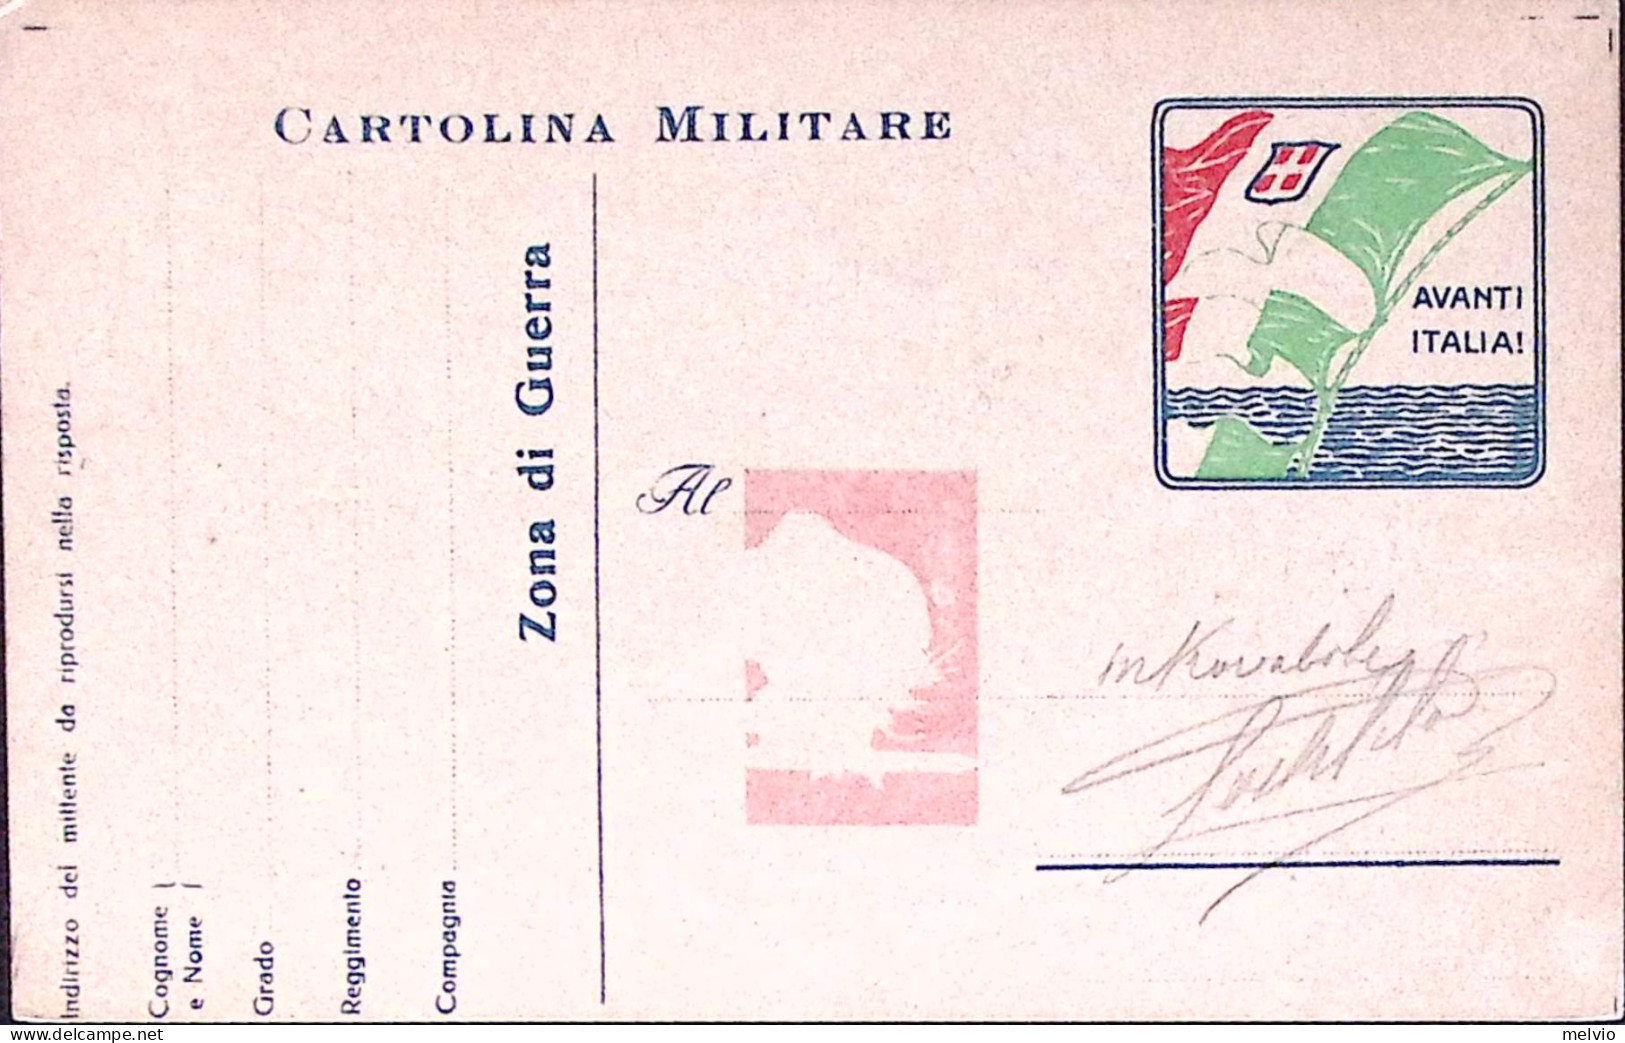 1916-ISCRIZIONE Nella Caserma Austriaca Di Gorizia Al Verso Di Cartolina Franchi - Patriotiques